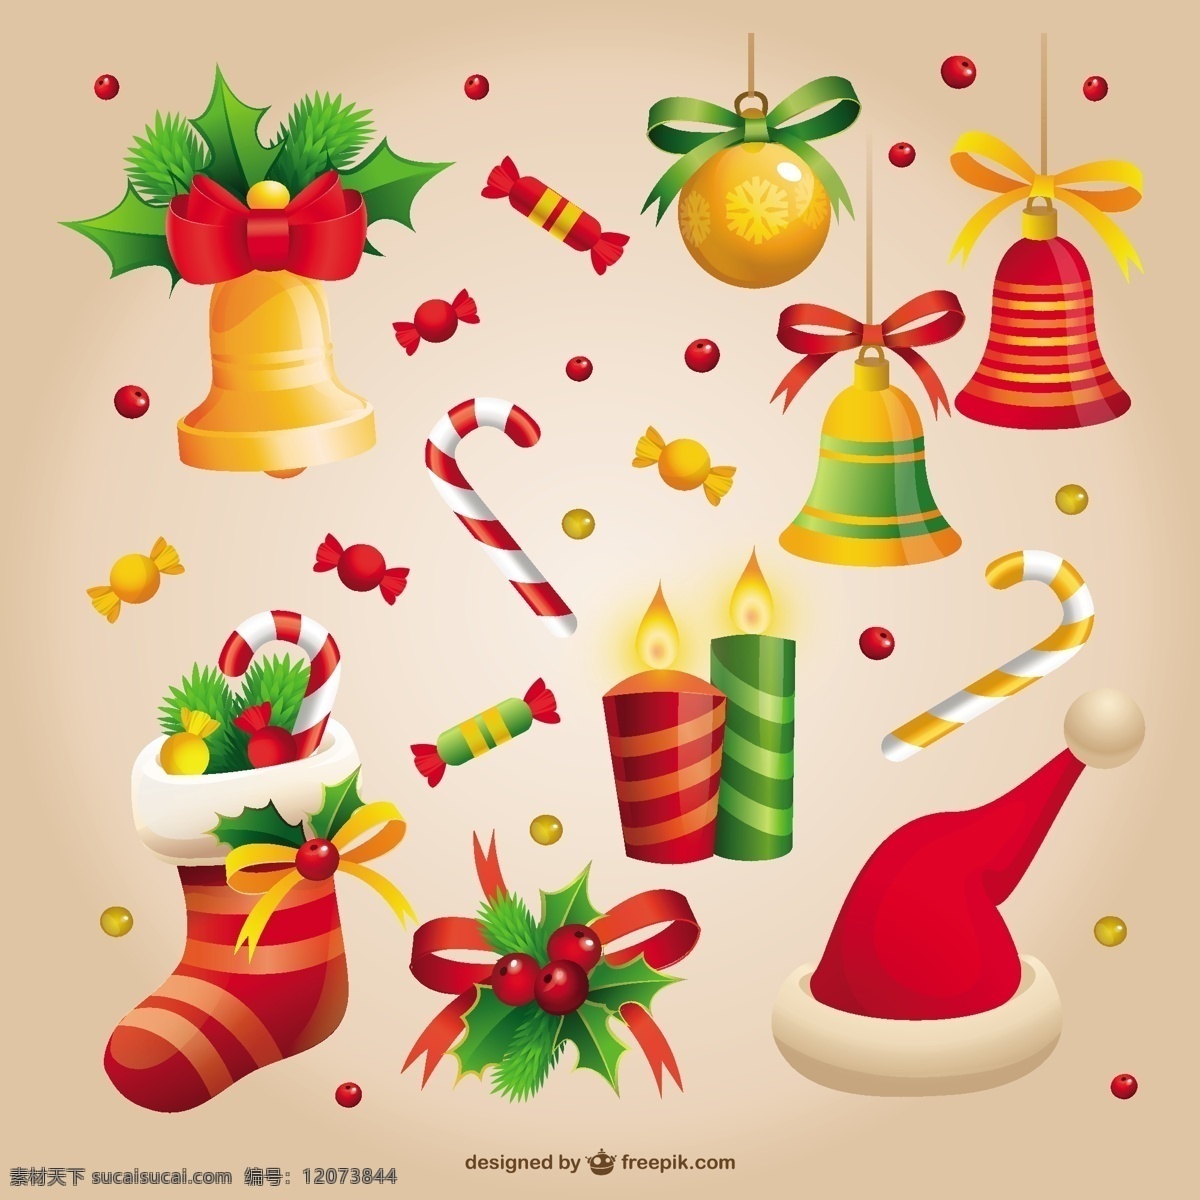 老式 圣诞 糖果 装饰 葡萄 圣诞节 圣诞装饰 圣诞装饰品 装饰品 圣诞礼品 手杖 黄色